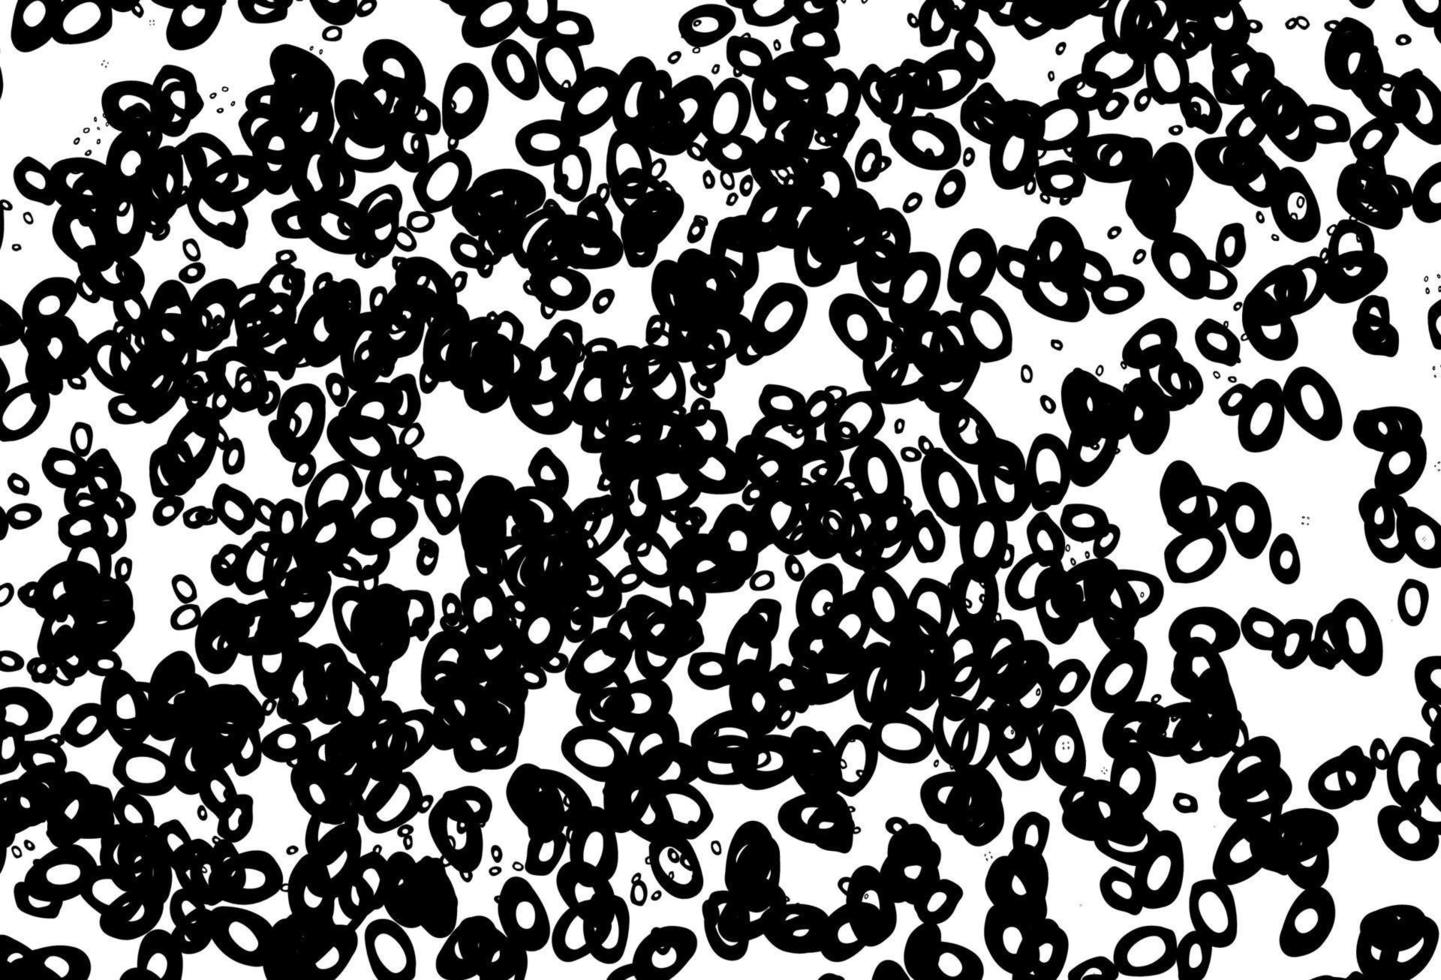 textura de vector blanco y negro con discos.